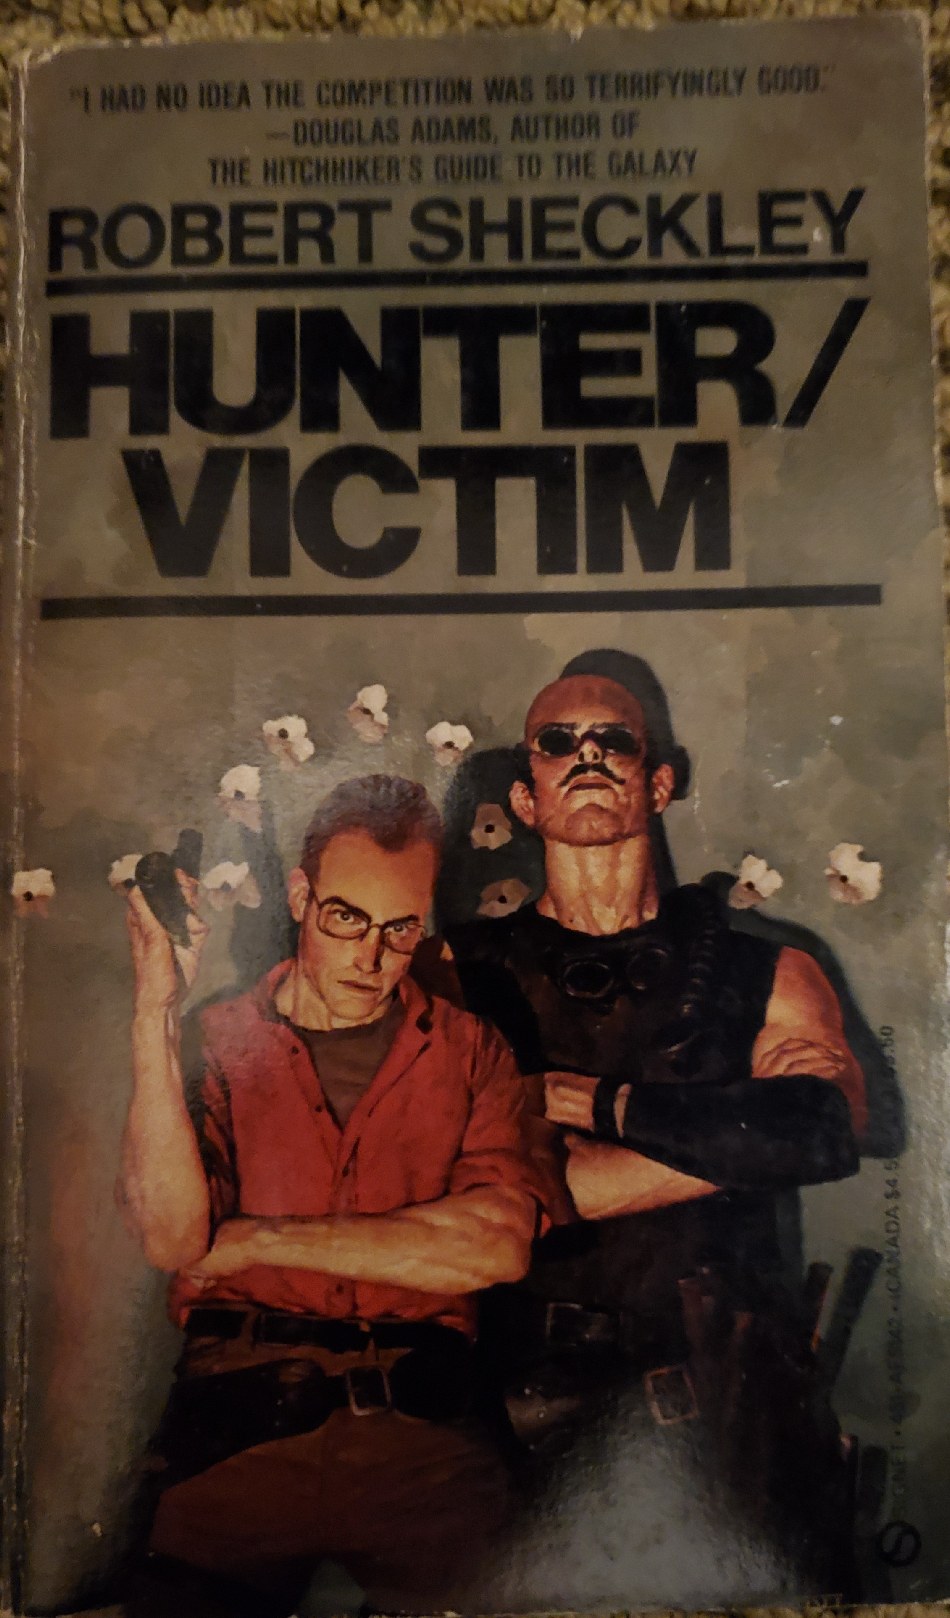 Sequel to 'Hunter/Biden'